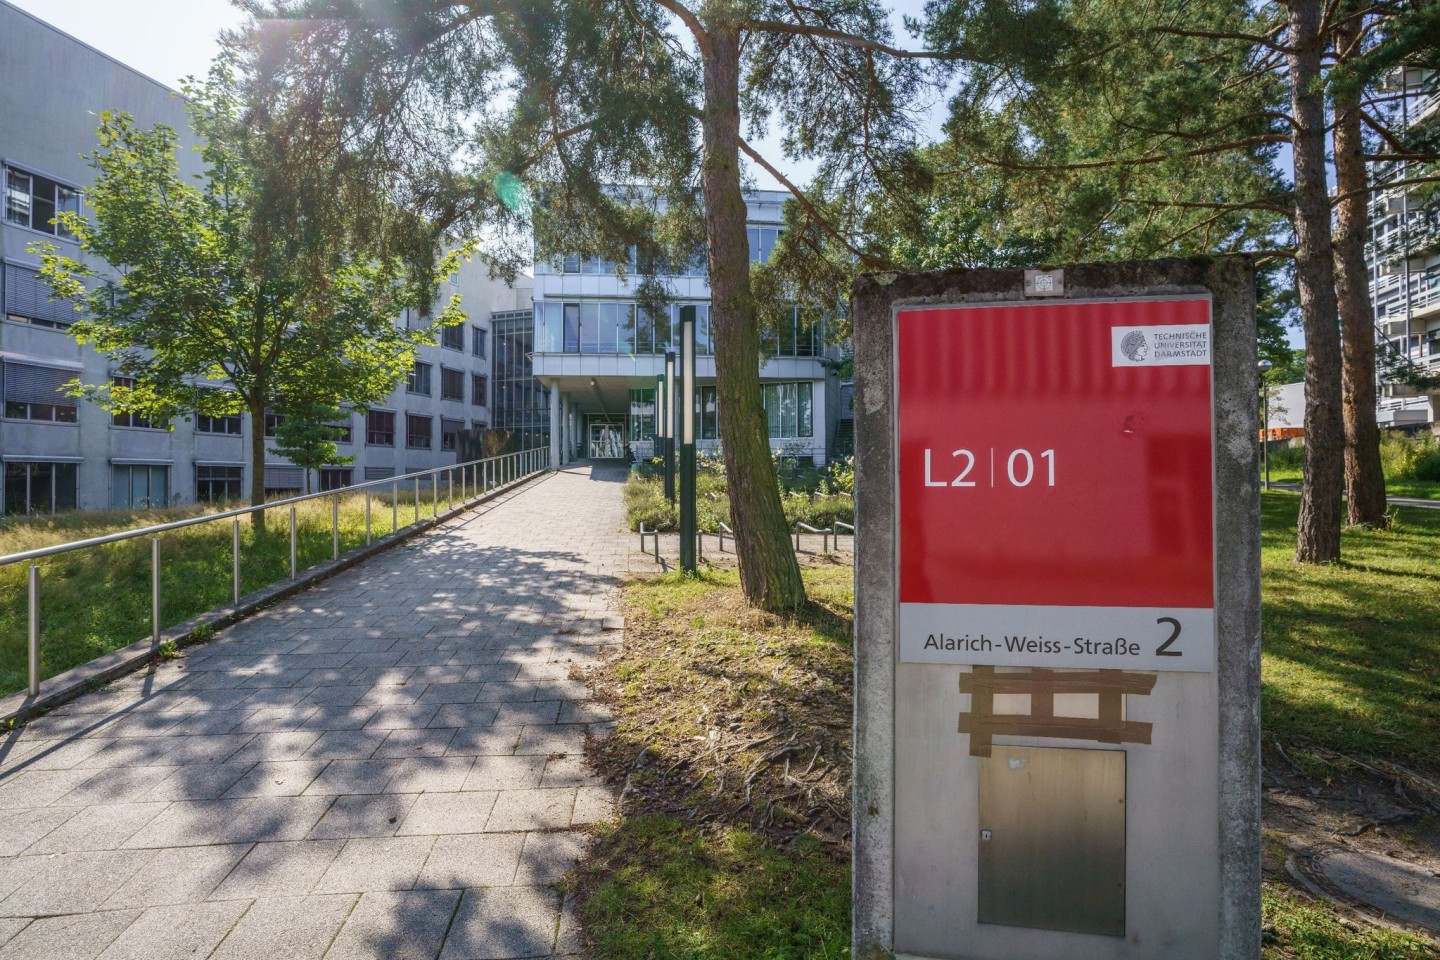 Der Campus Lichtwiese der Technischen Universität Darmstadt - vor knapp einem Jahr hatten hier sieben Menschen Vergiftungserscheinungen.